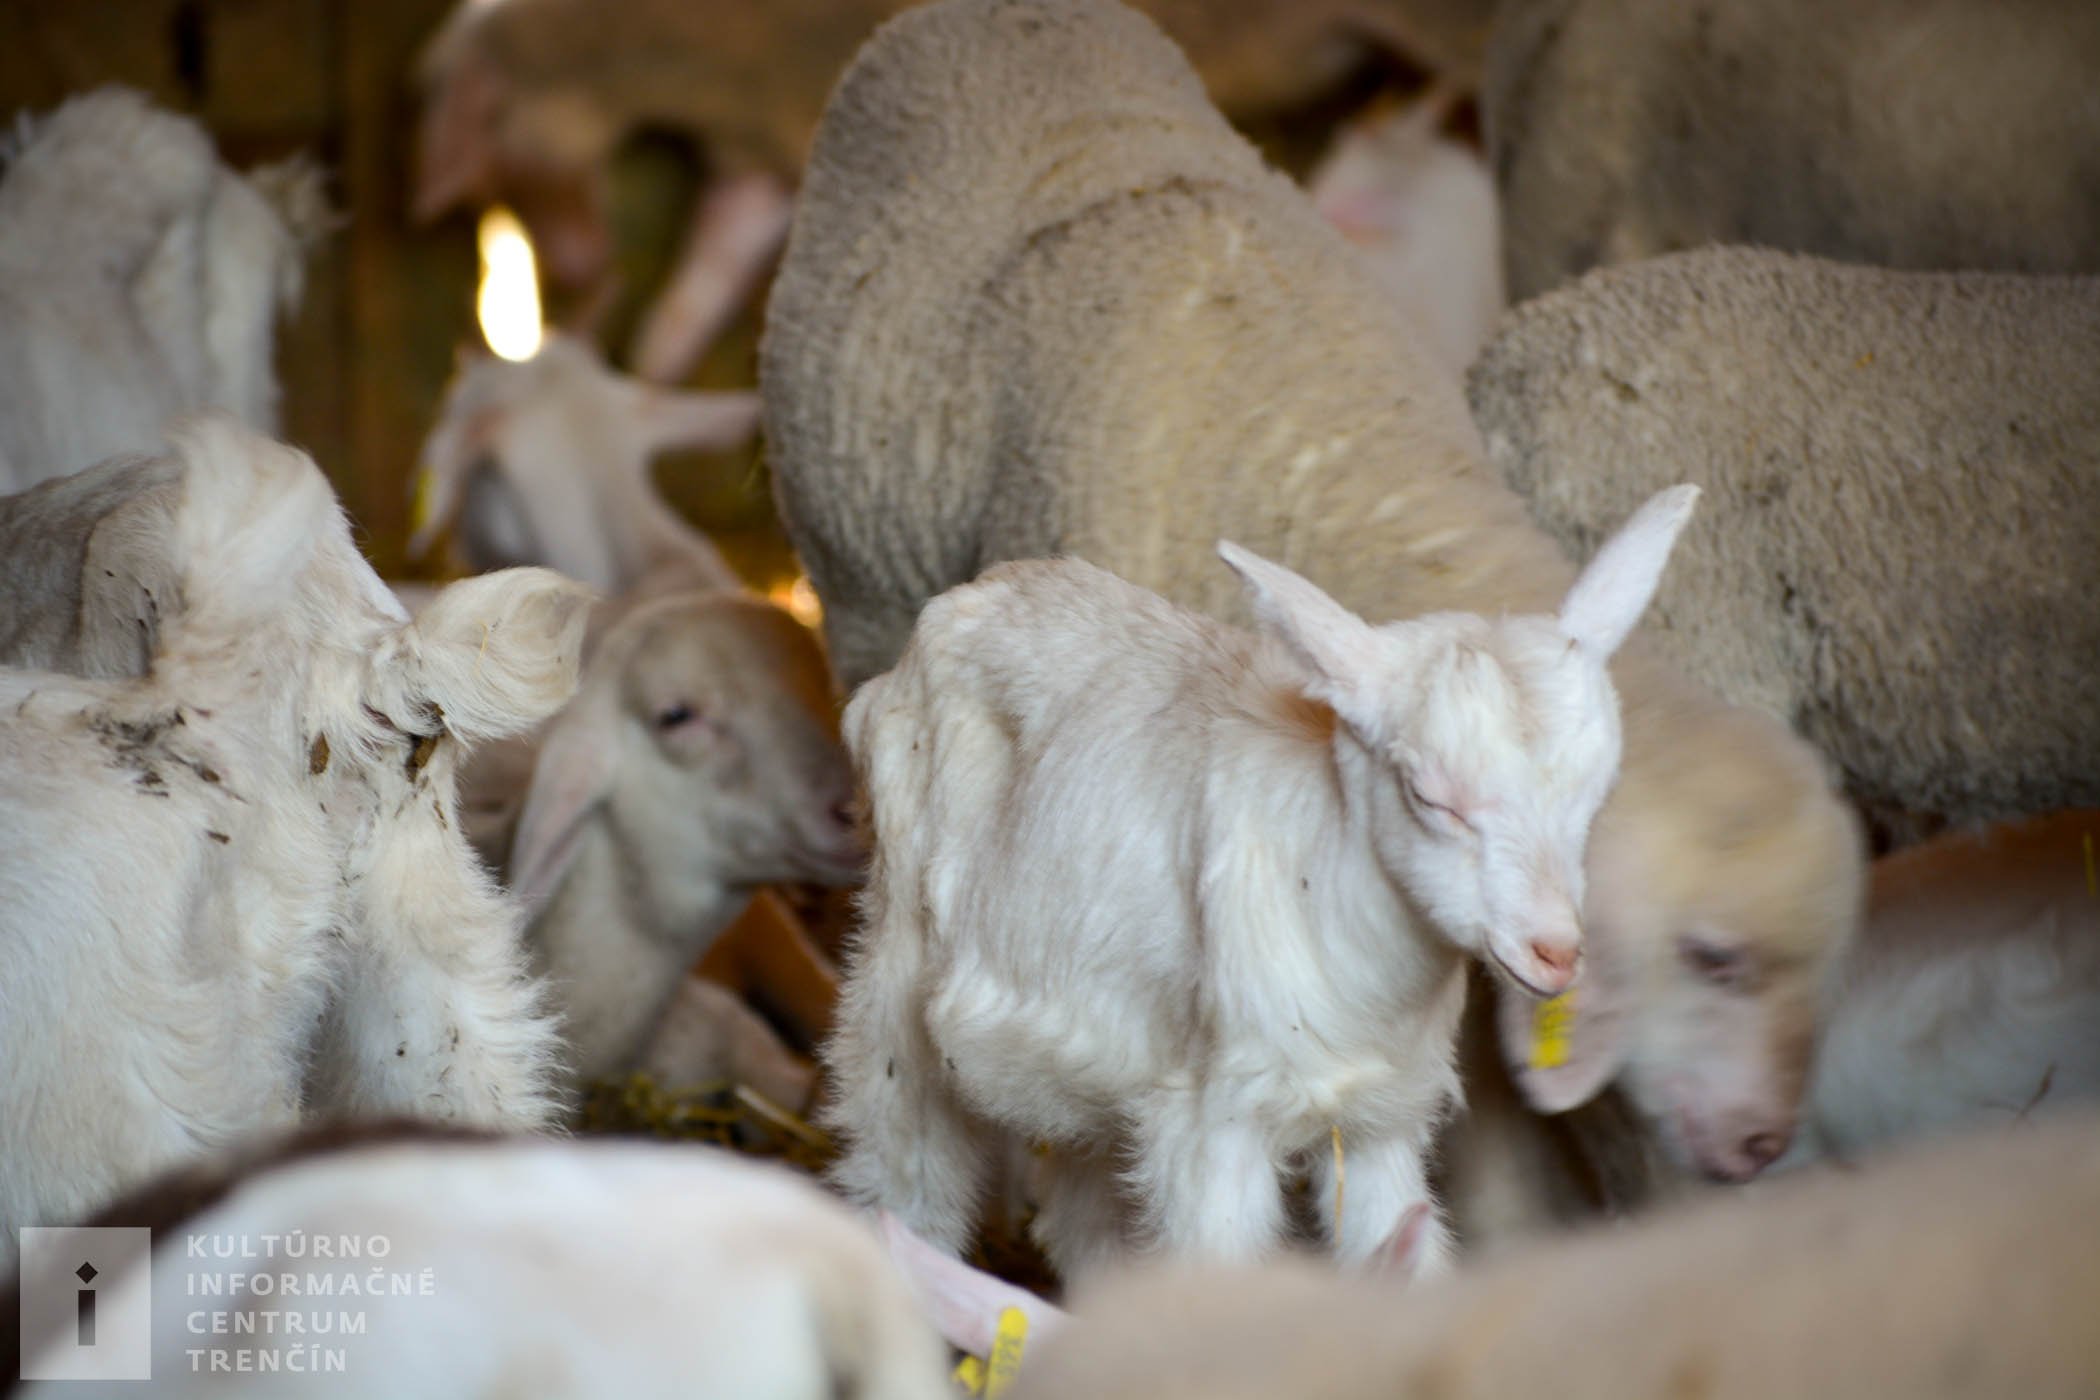 Na gazdovstve Uhliská chovajú aj kozy a ovce. Mlieko, mliečne výrobky alebo mäso si môžete vychutnať v miestnej reštaurácii alebo hostinci.